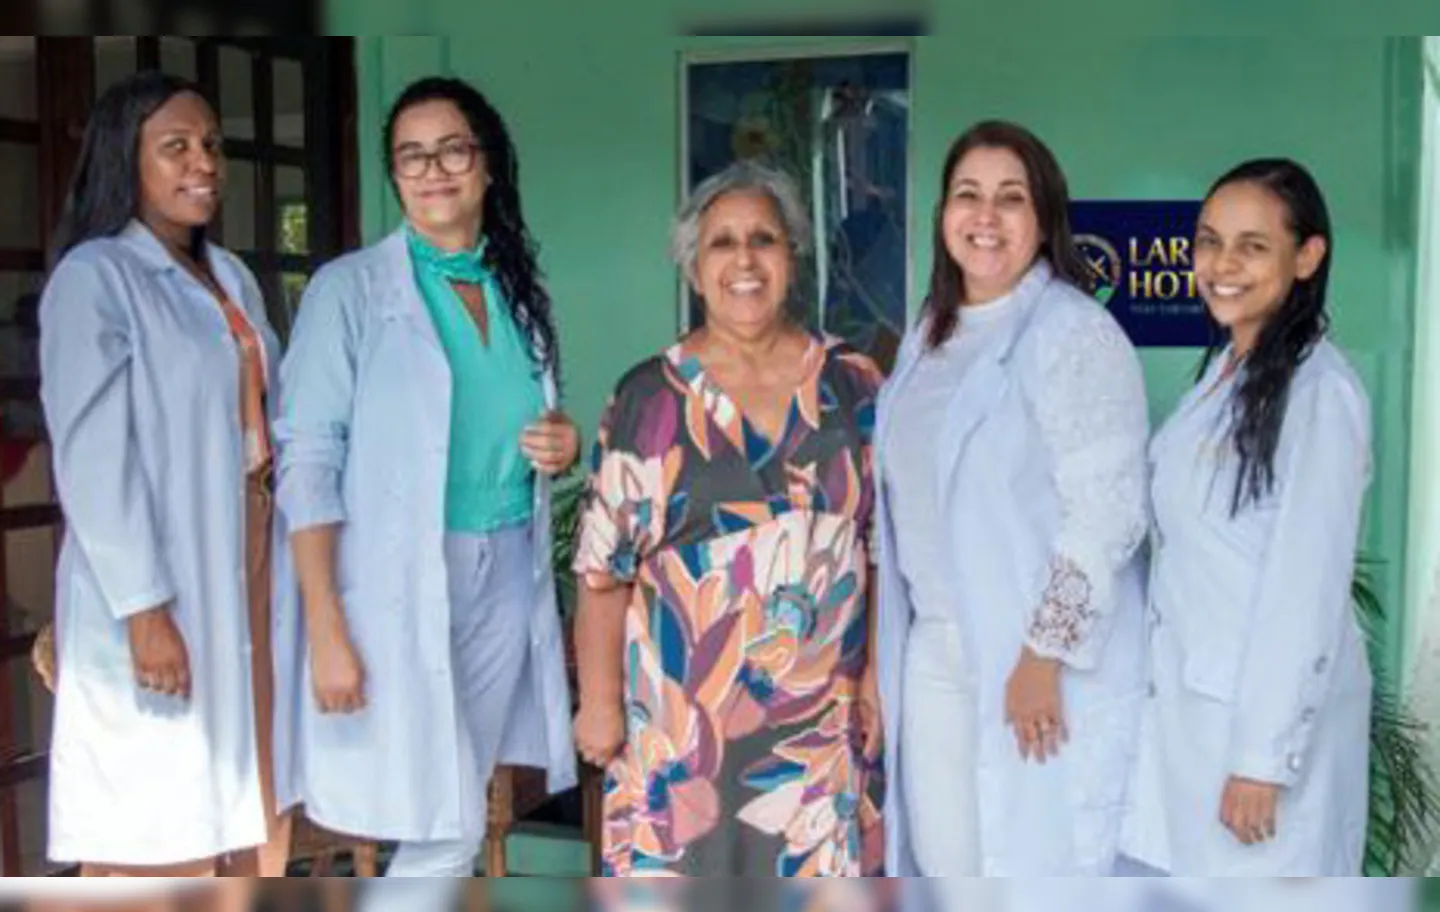 Jociene Neves dos Santos, Janice Damasceno, Ana Maria Moreira, Daniela Ramalho e Aline Santos